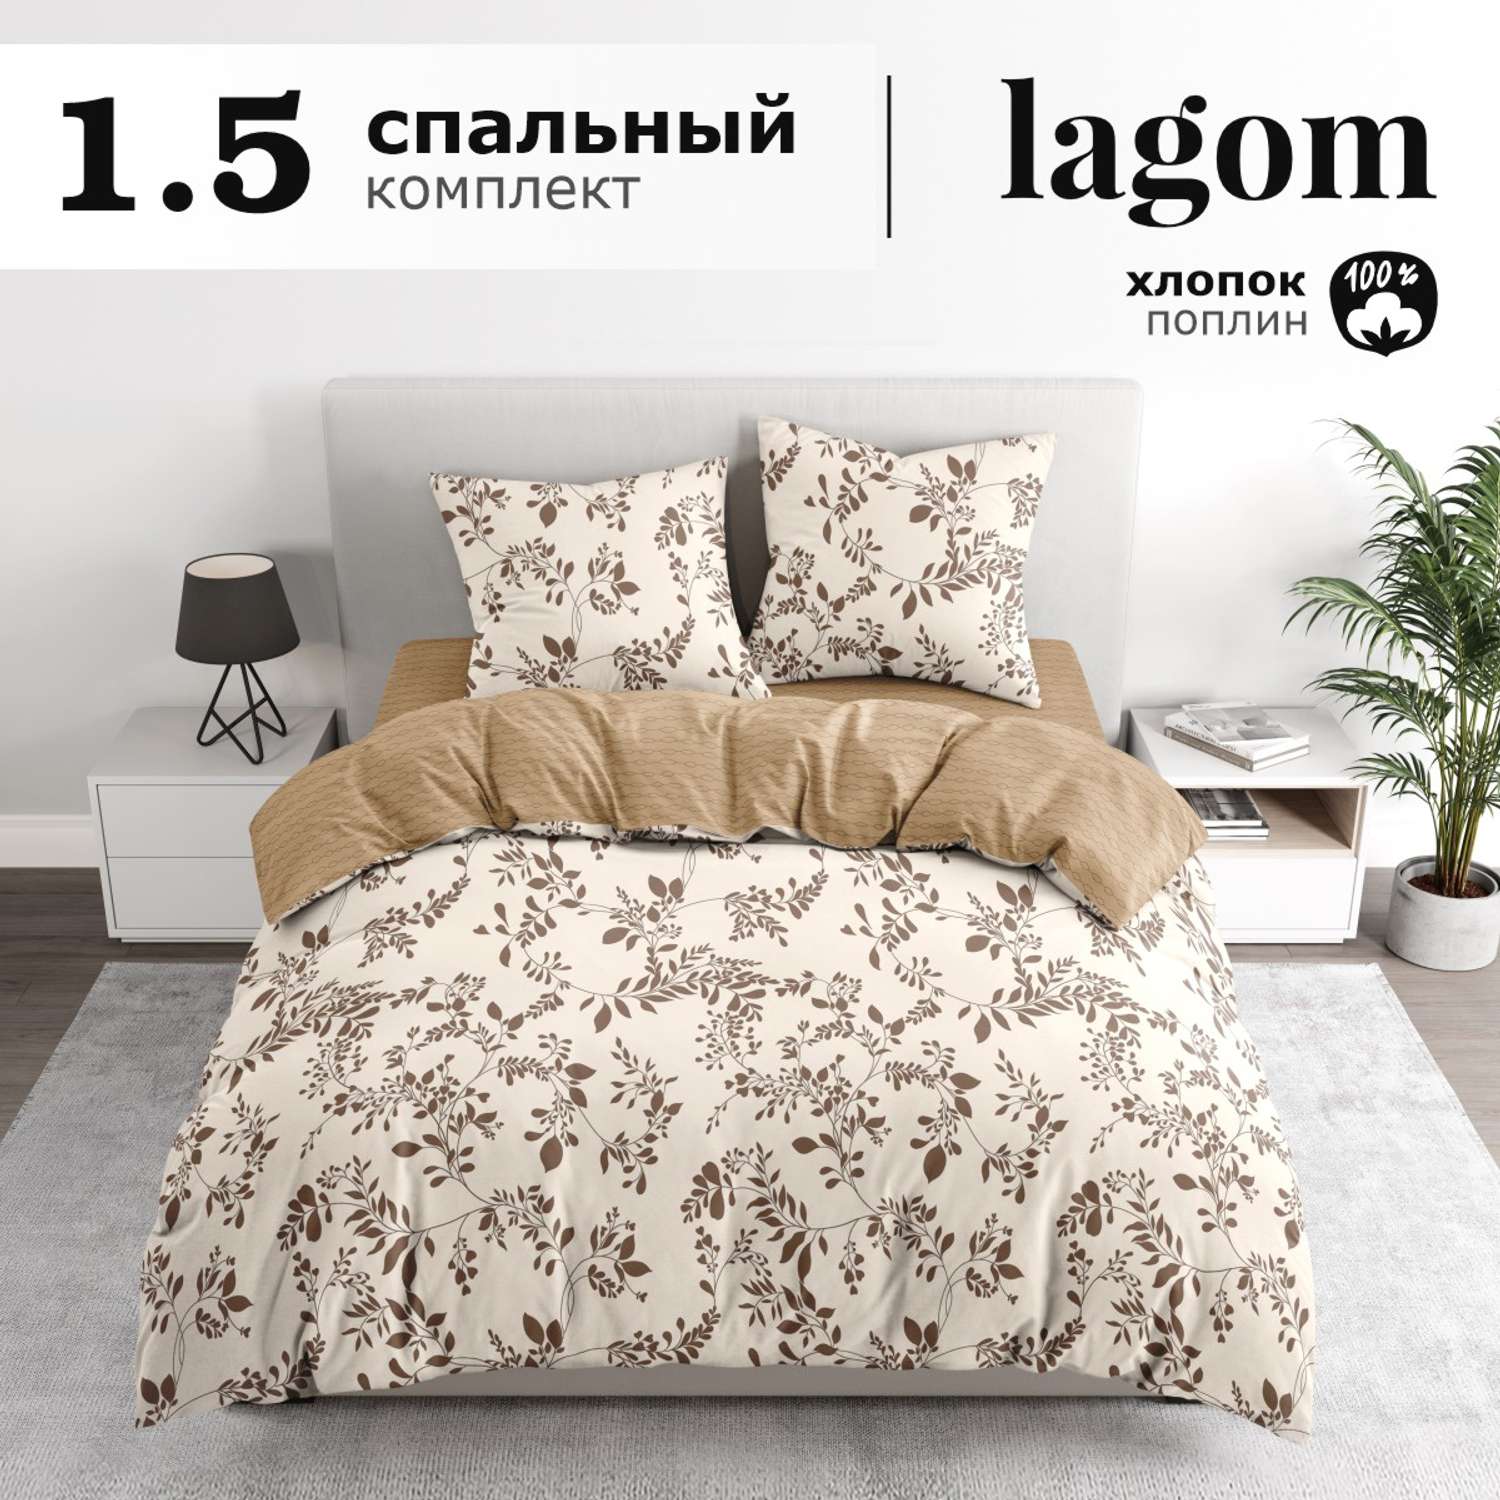 Комплект постельного белья lagom Лунд 1.5-спальный наволочки 70х70 - фото 2